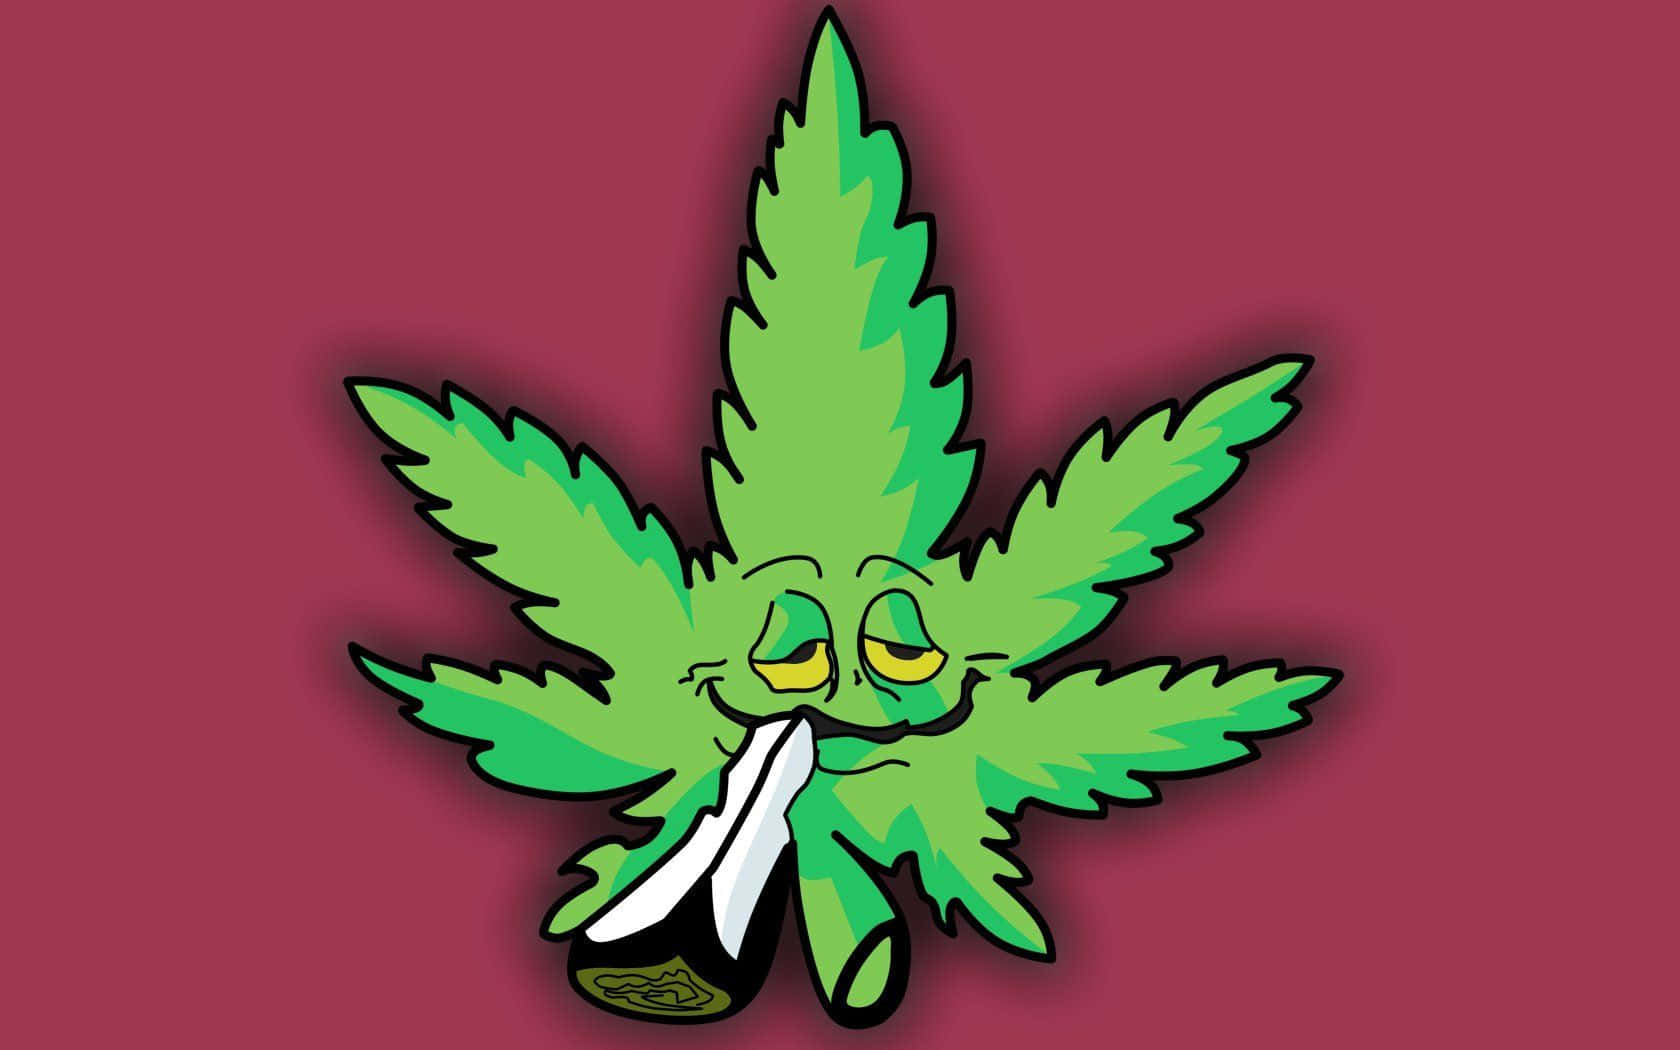 Plantade Cannabis Vibrante En Primer Plano.